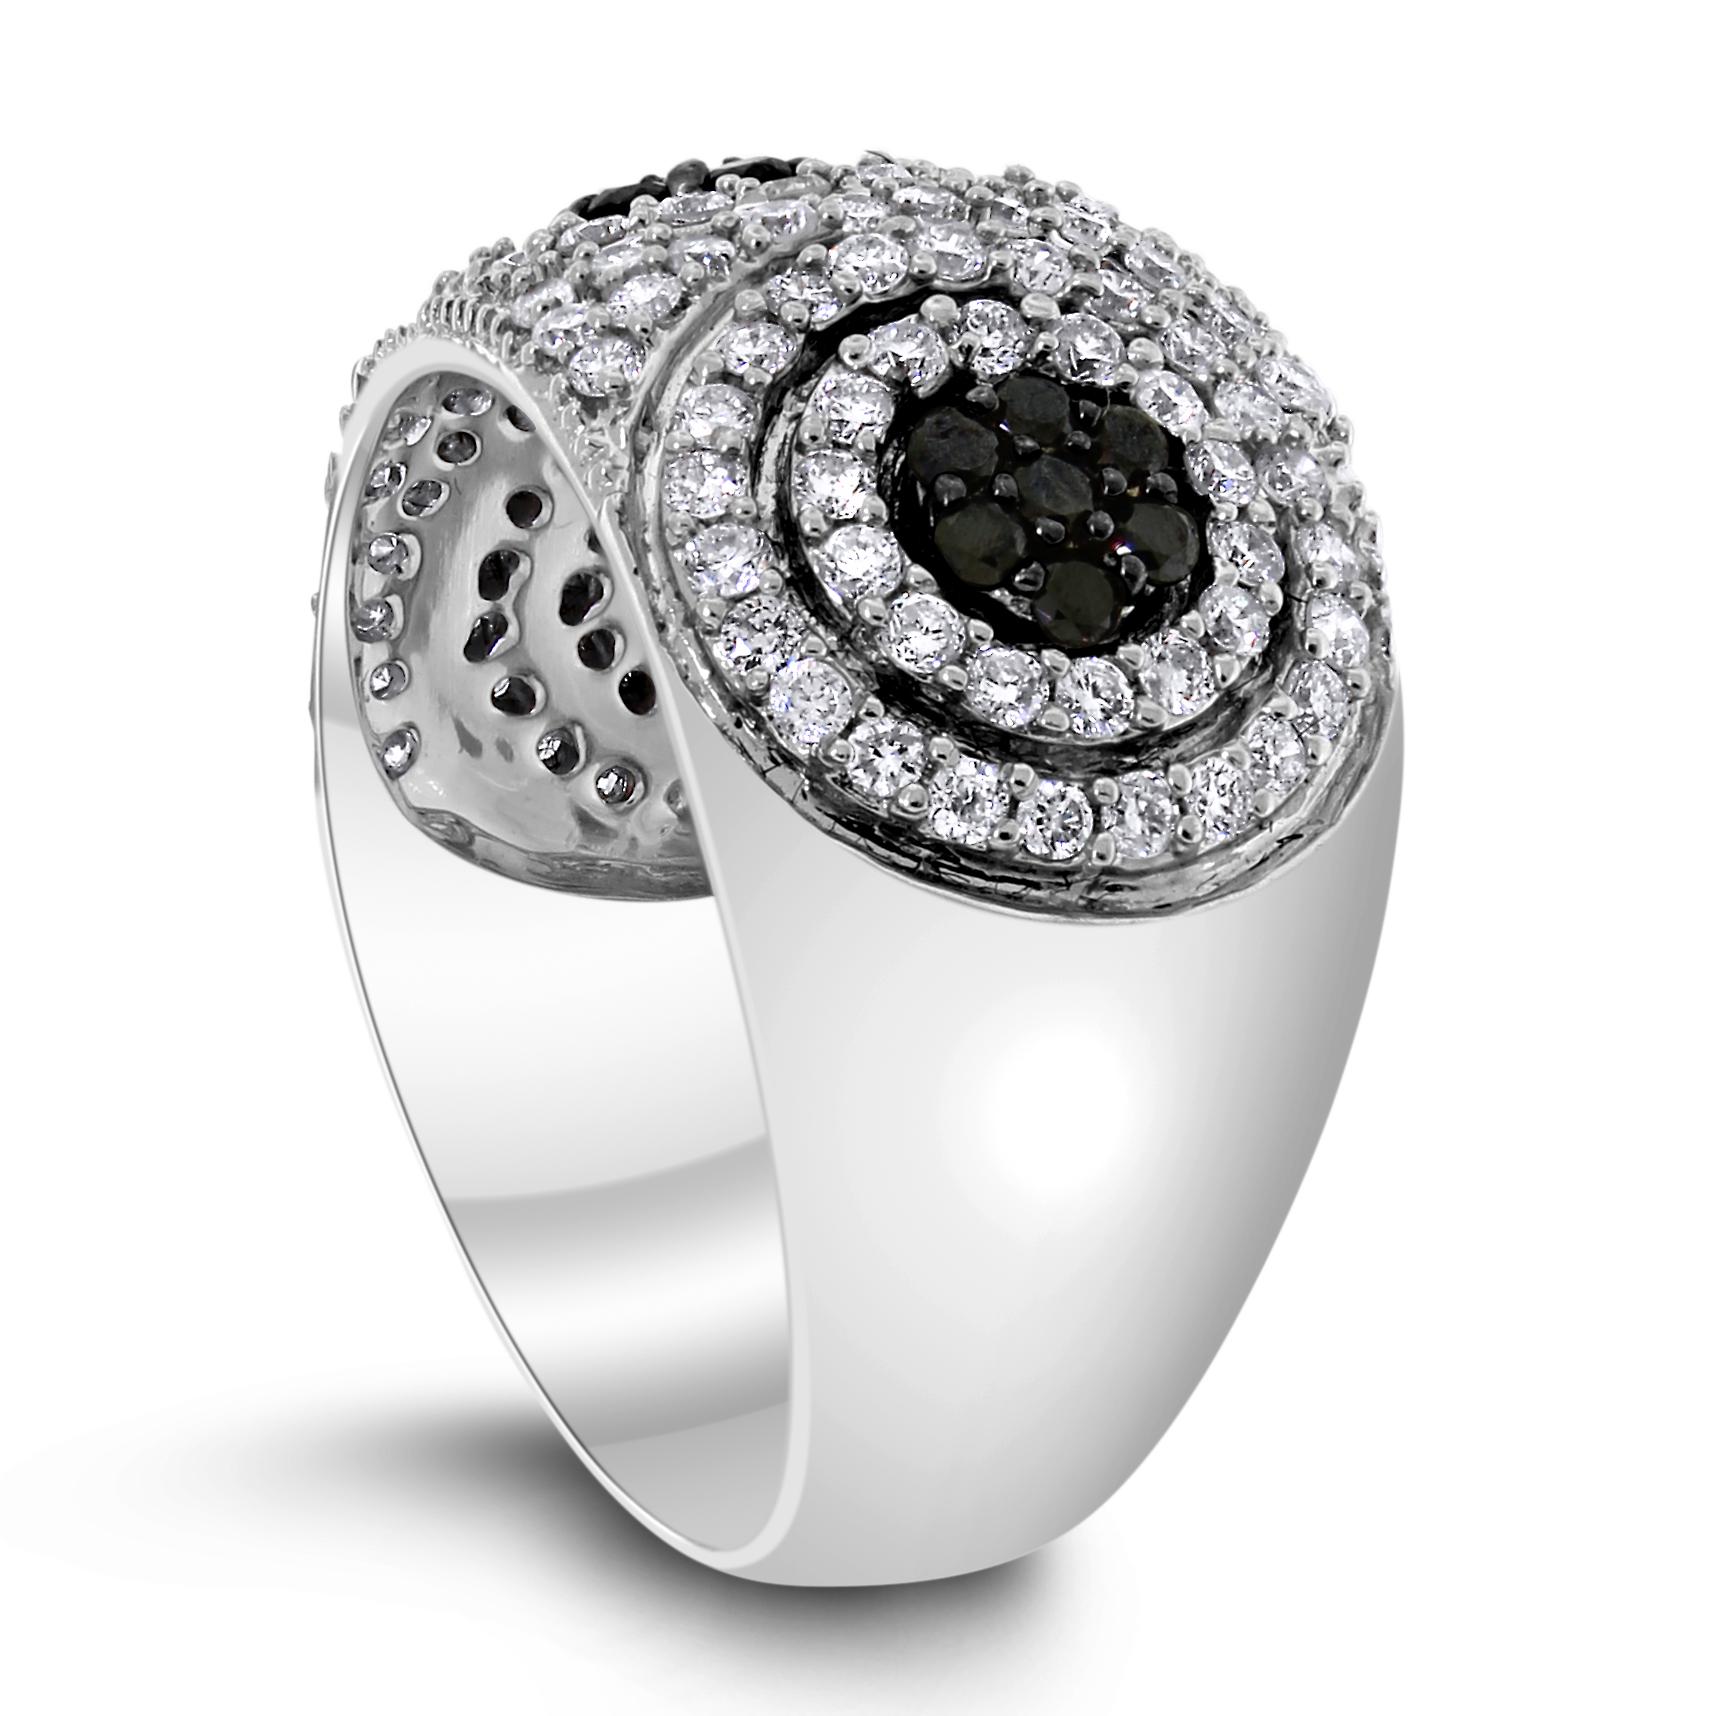 Cette bague à diamants blancs et noirs est une invitation à l'amusement et au divertissement.

Forme des diamants : Ronde
Poids des diamants : 0,95 ct (blanc) & 0,30 ct (noir)
Couleur des diamants : F - G & Noir
Diamants Clarity : SI - I

Métal : Or